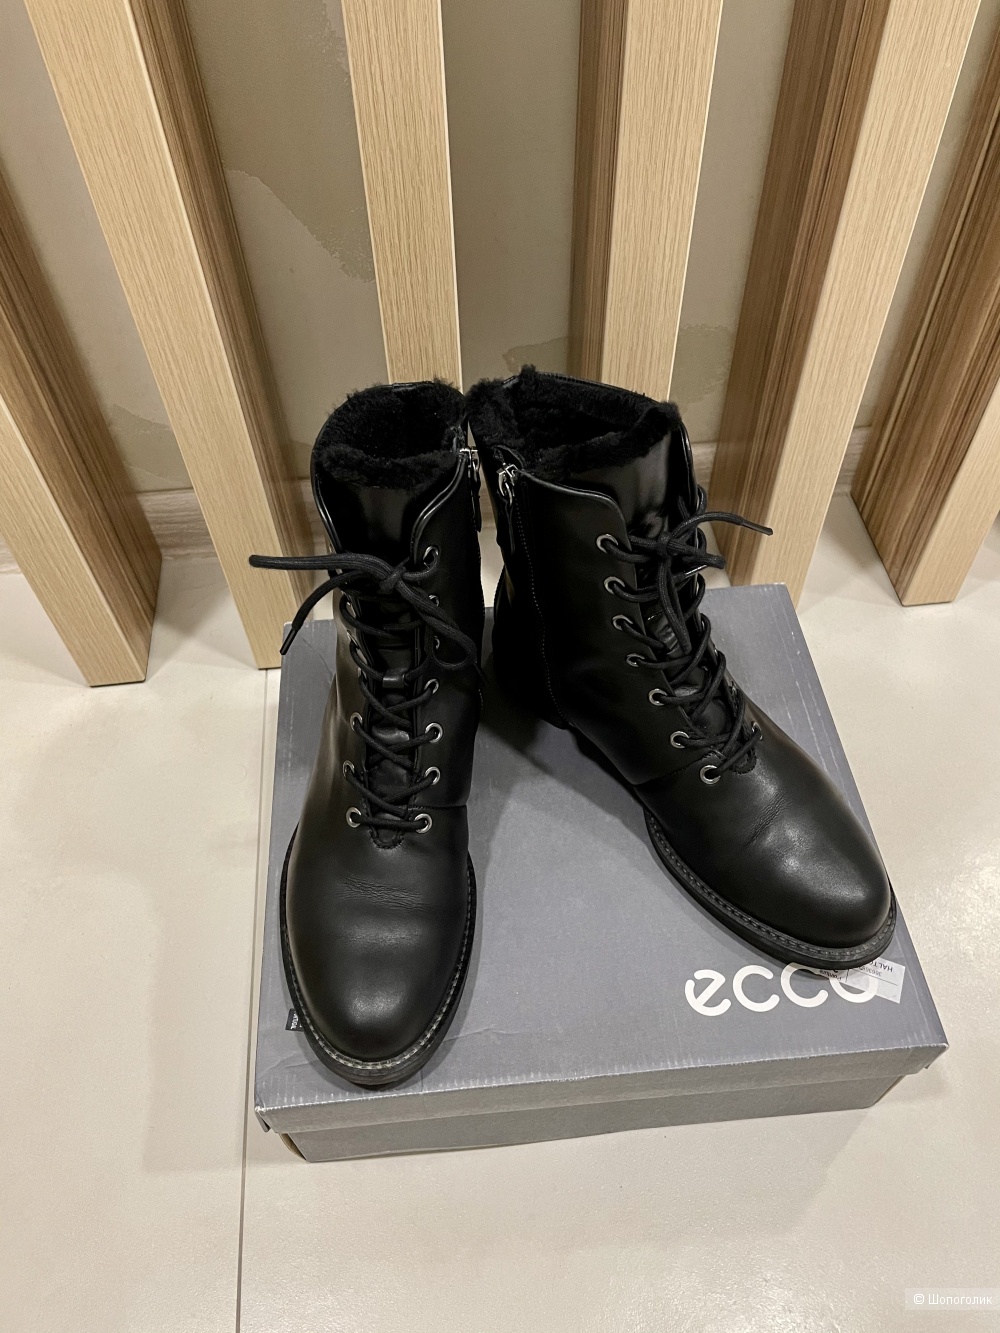 Сапоги ботинки Ecco размер 38